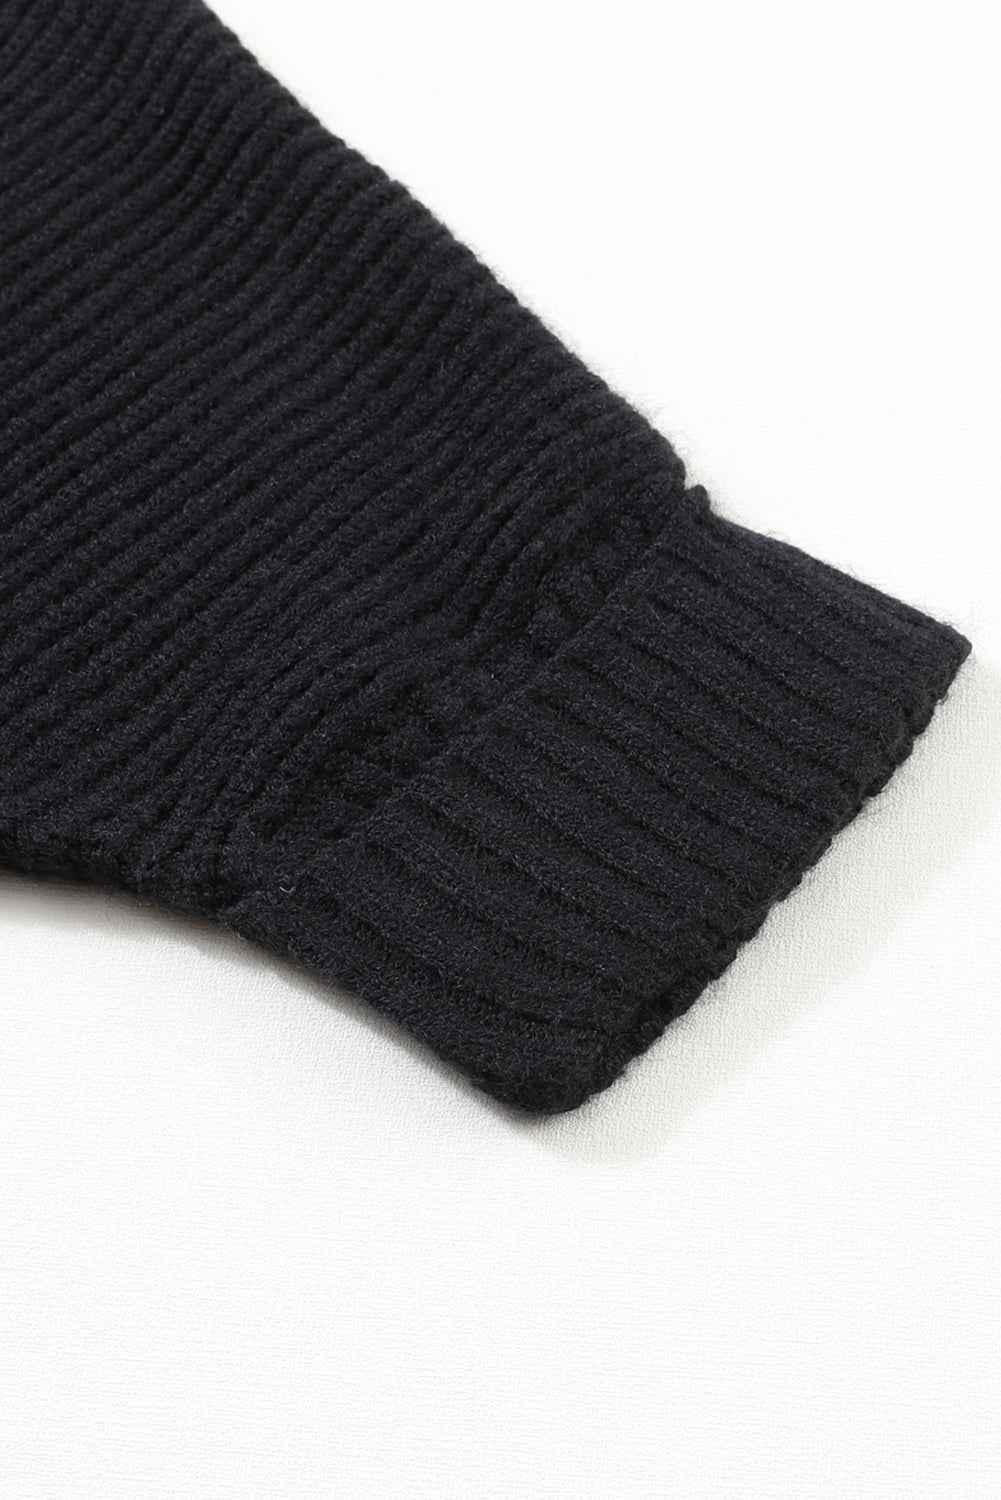 Crni preveliki džemper na preklop preko rukava